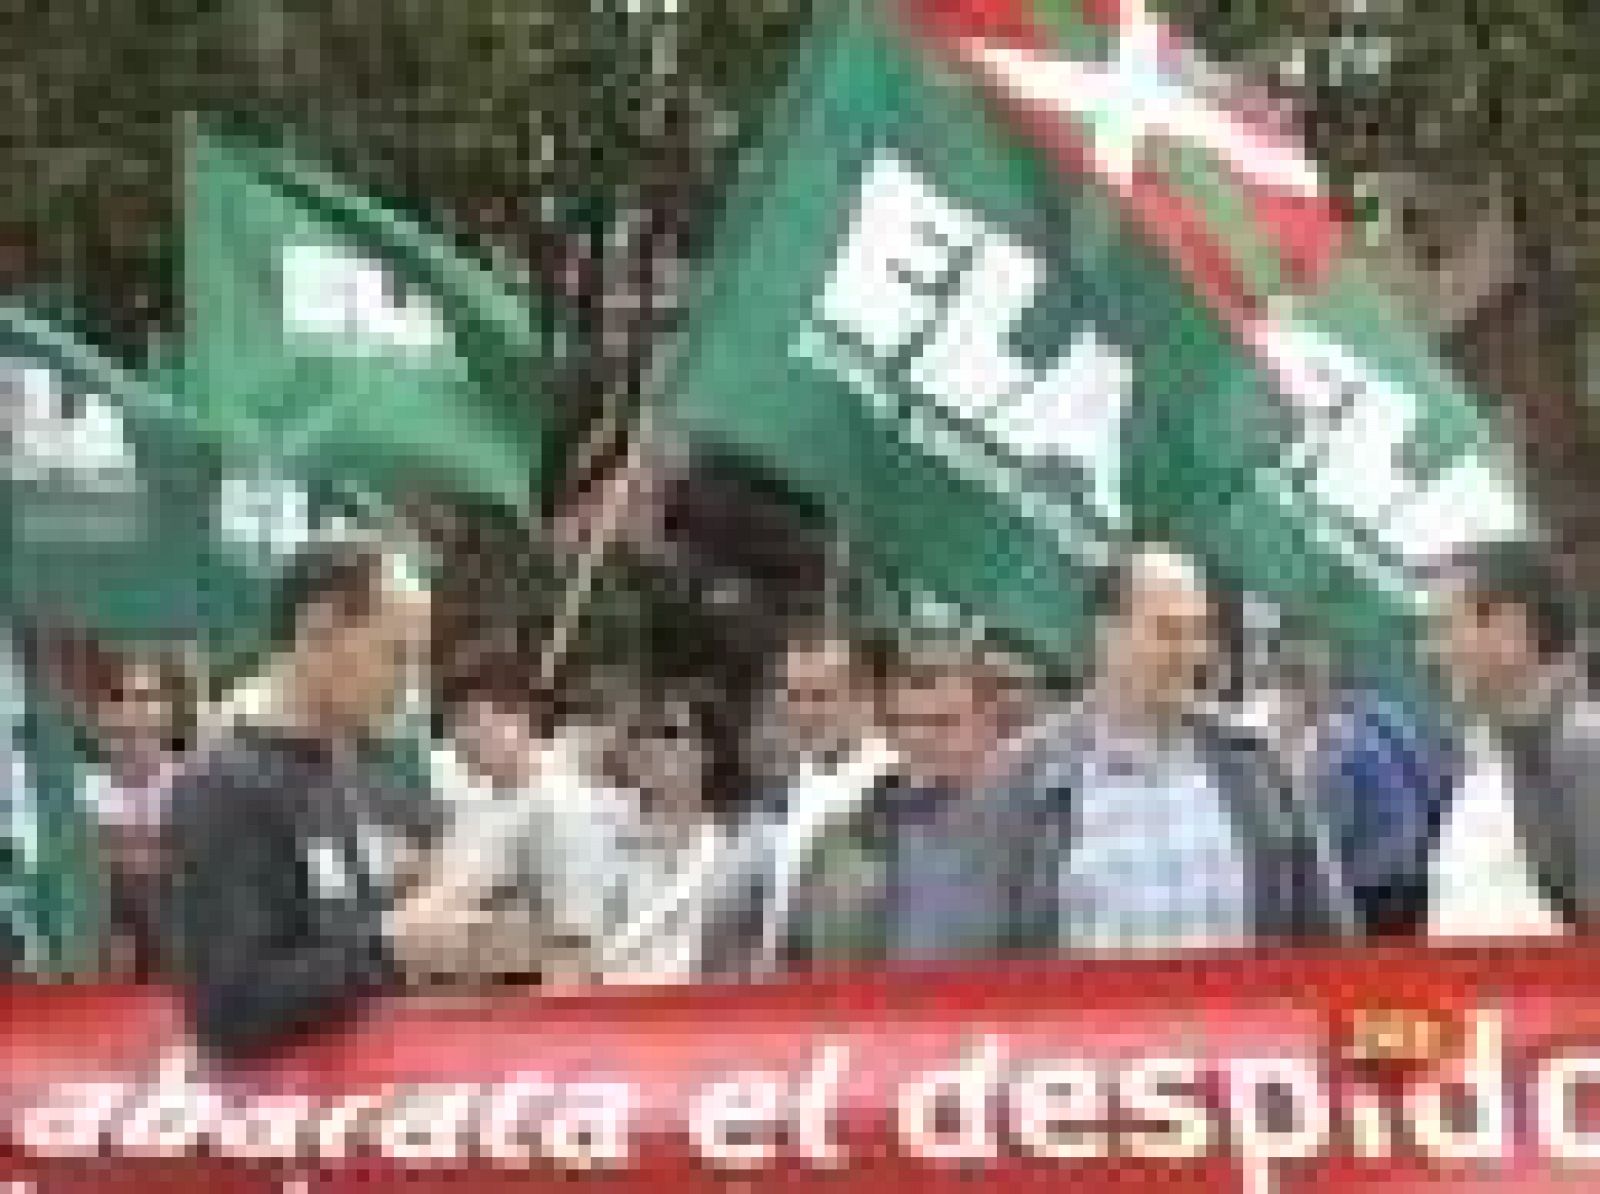 Los sindicatos nacionalistas han convocado para este jueves una huelga general en el País Vasco y Navarra, que coincide en el tiempo con la confirmación esta semana de que la economía vasca está en recesión y con el inicio de las reuniones previas al diálogo social que quiere impulsar el Gobierno vasco (21/05/09).